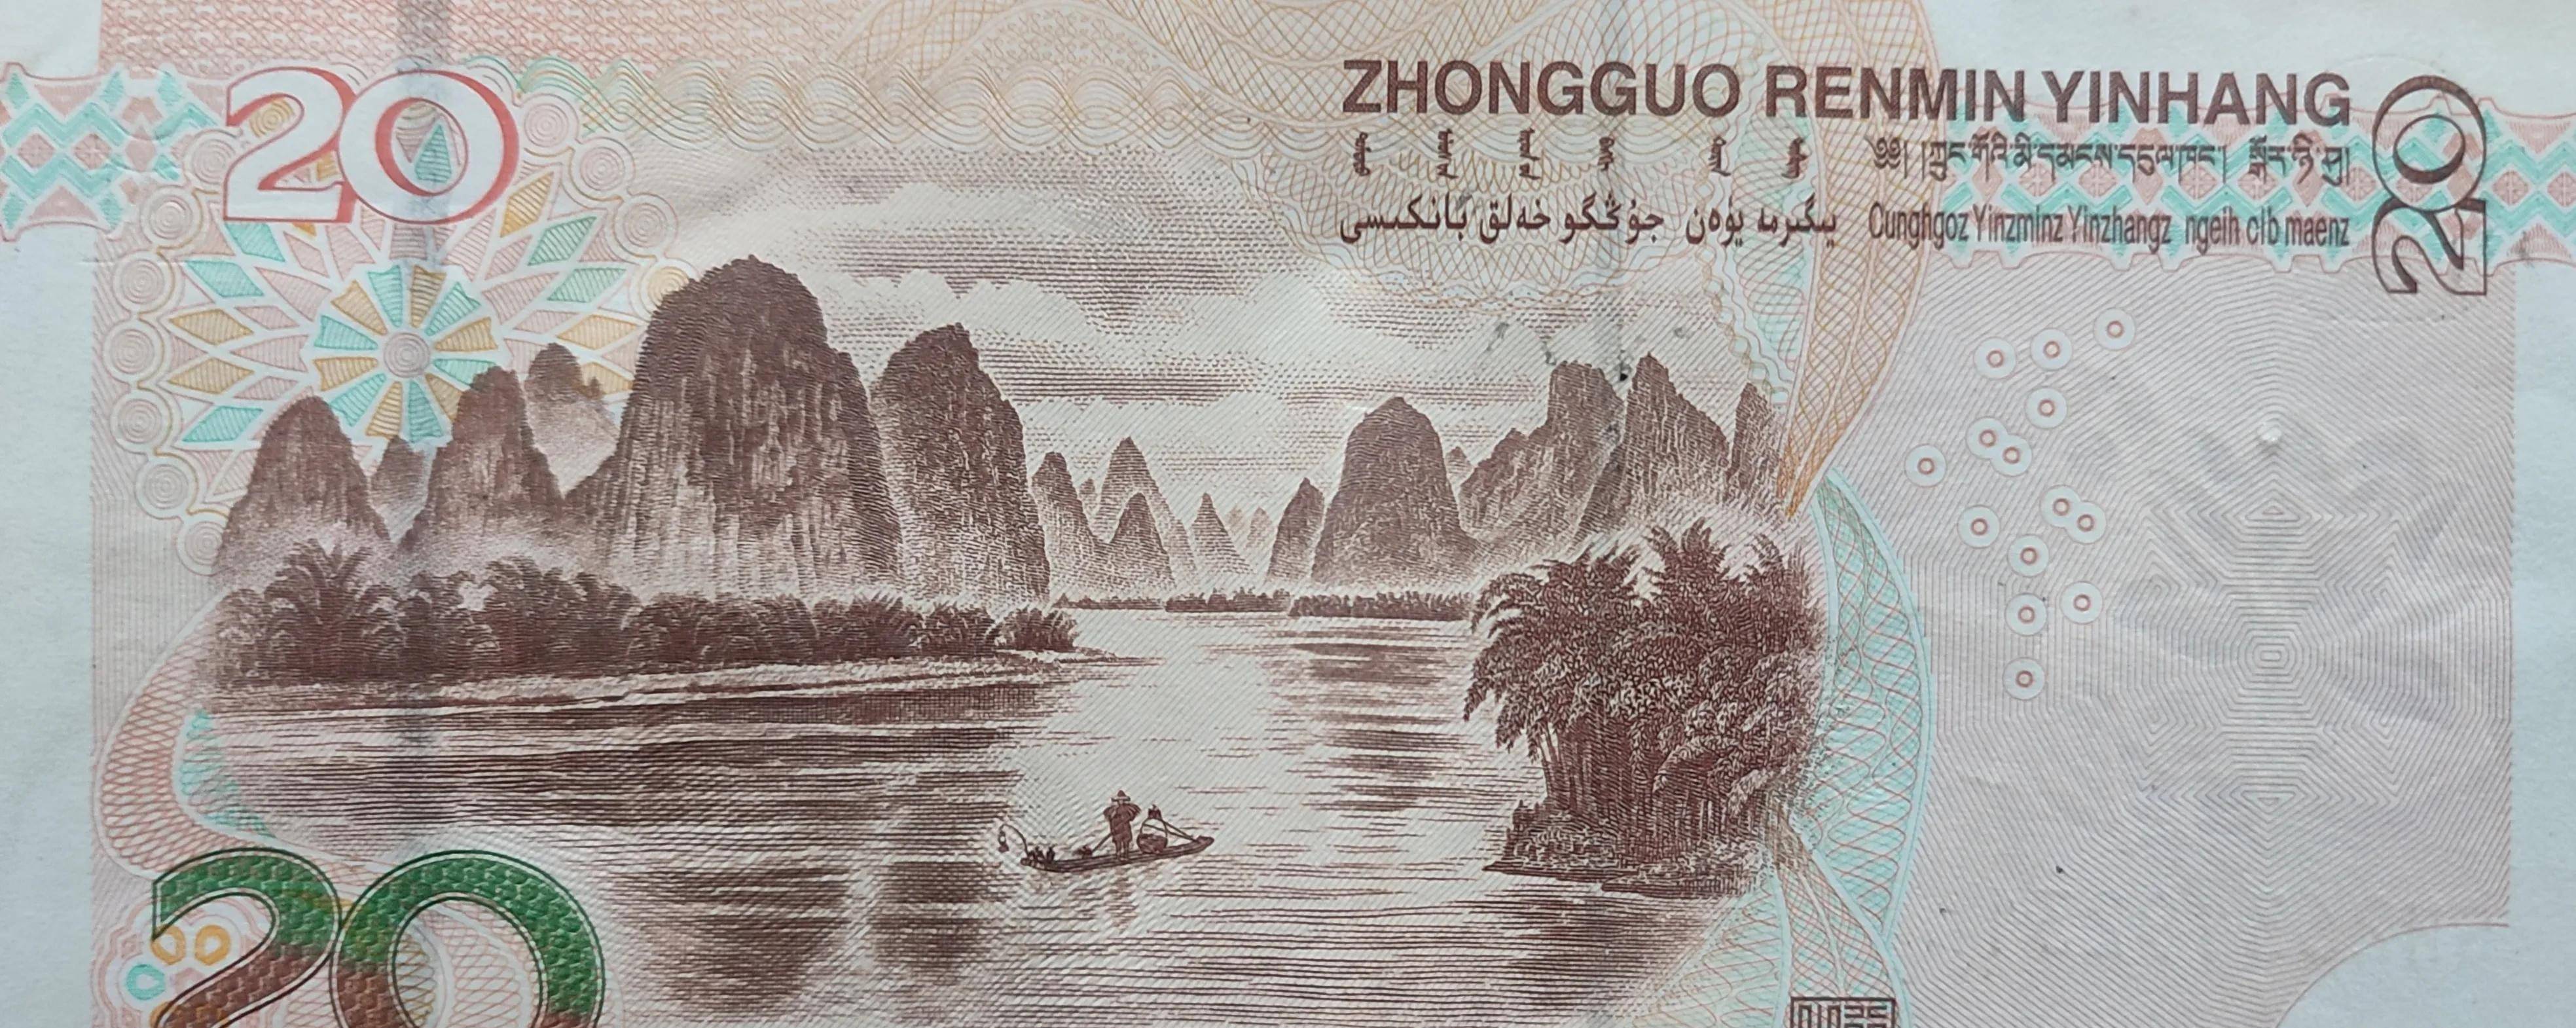 20元人民币背面漓江渔翁老爷爷走了,回顾我的漓江之旅!